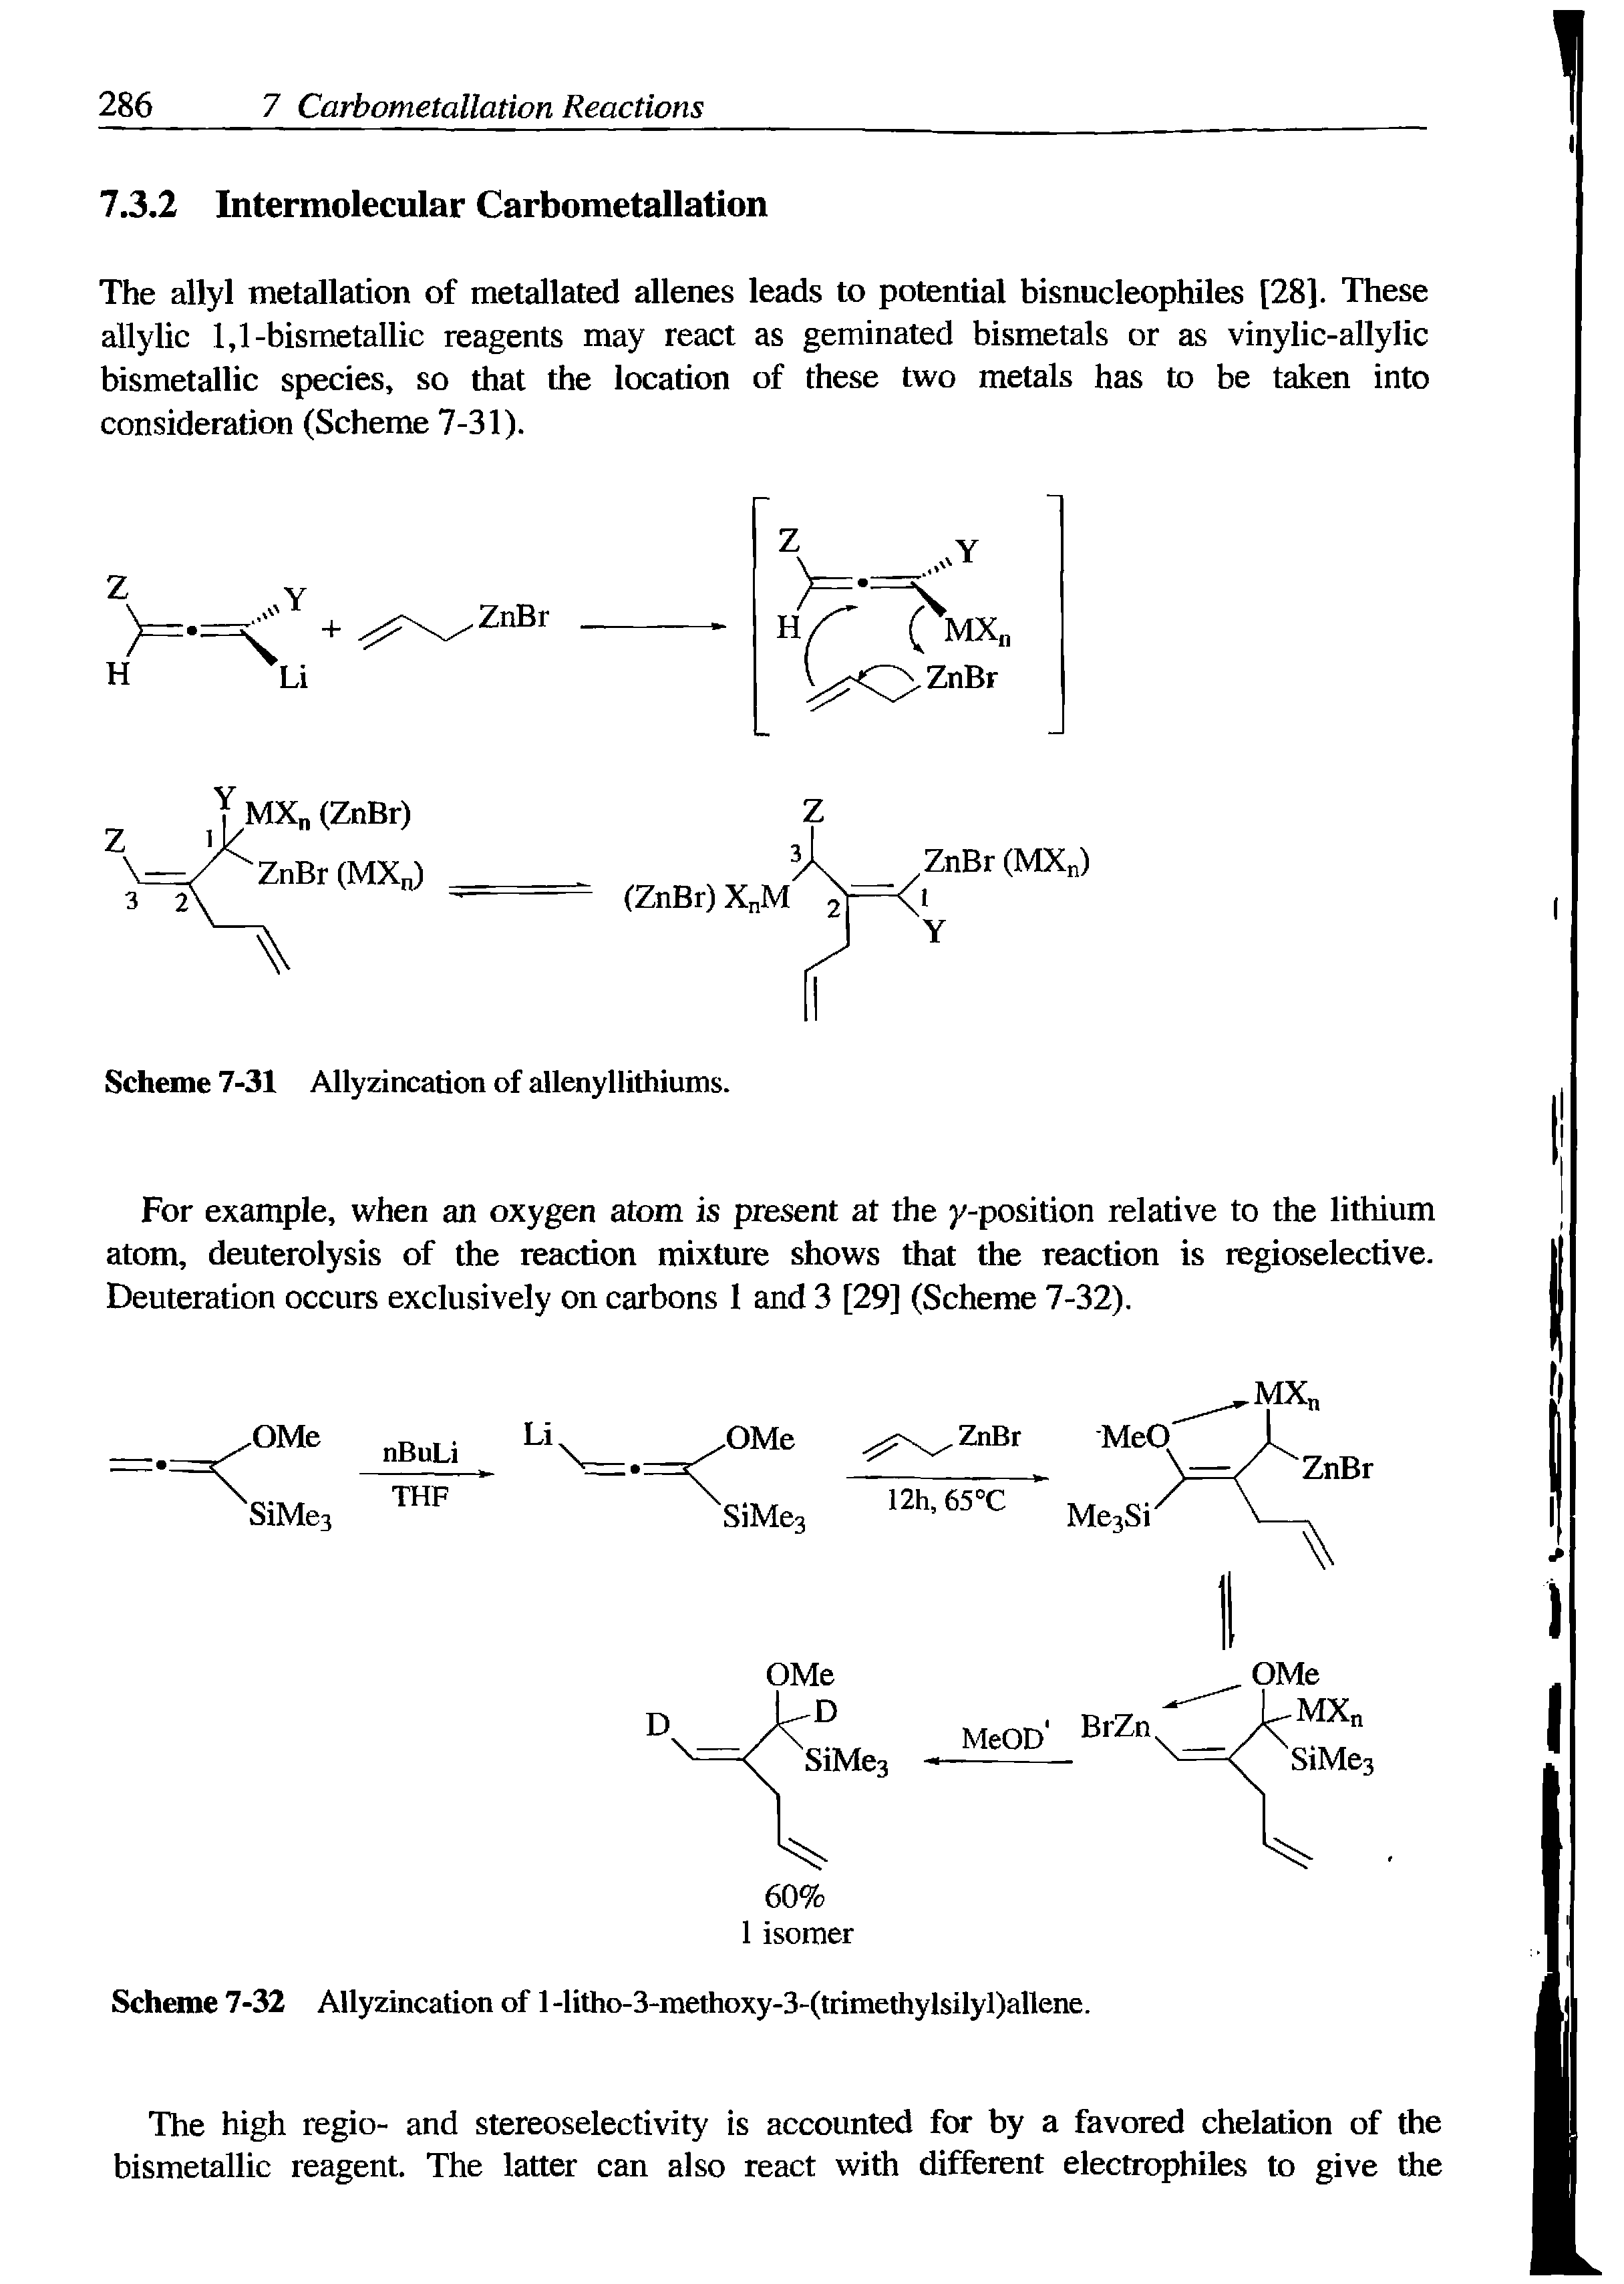 Scheme 7-32 Allyzincation of 1 -litho-3-methoxy-3-(trimethylsilyl)allene.